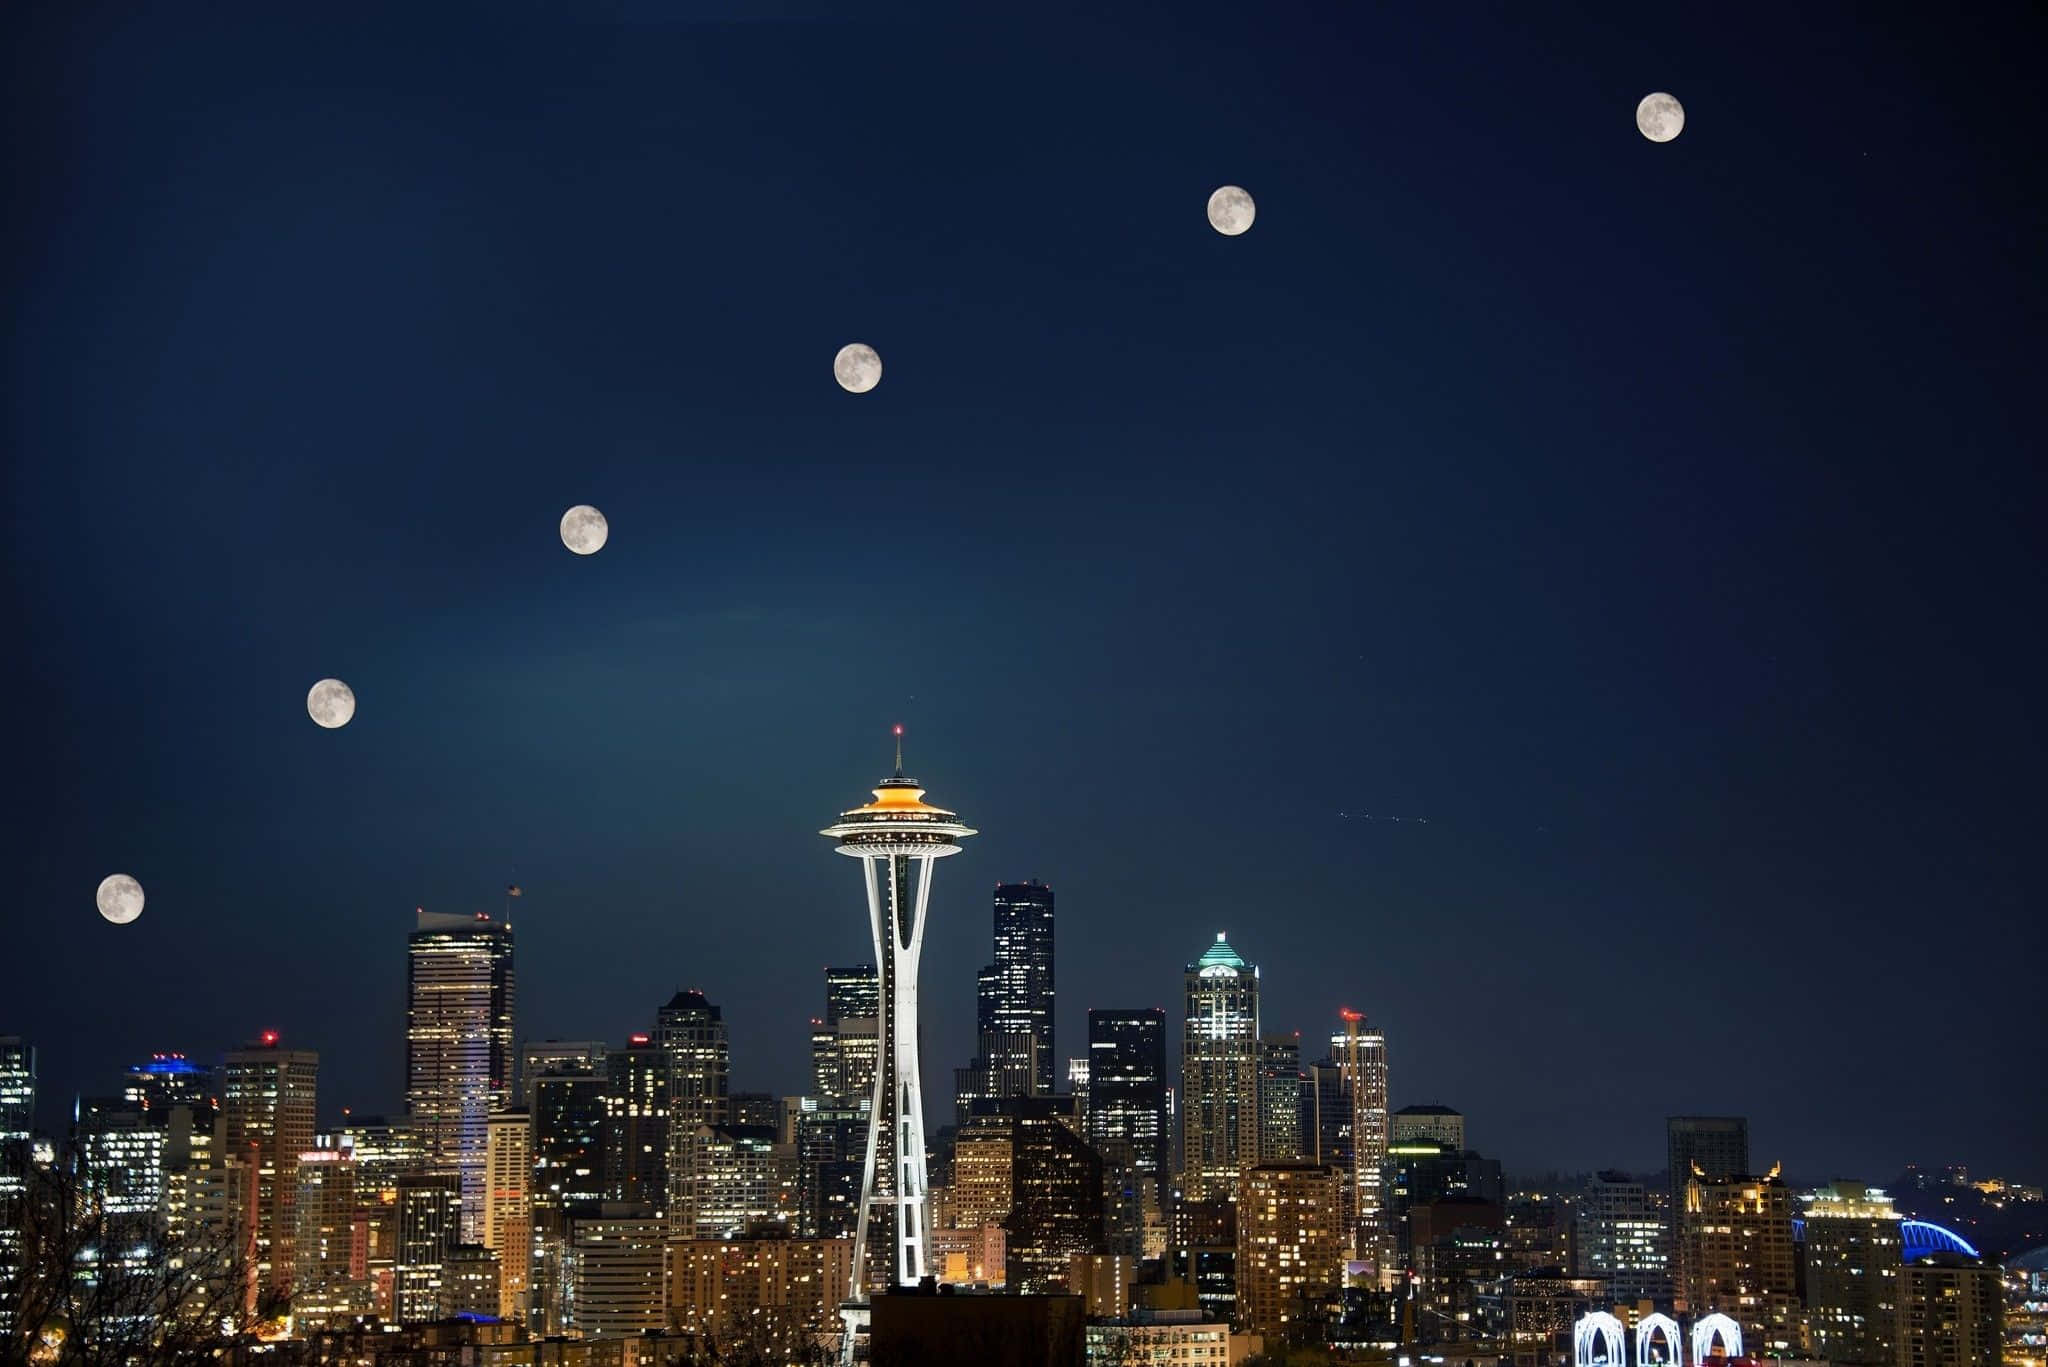 Hintergrundbildvon Seattle